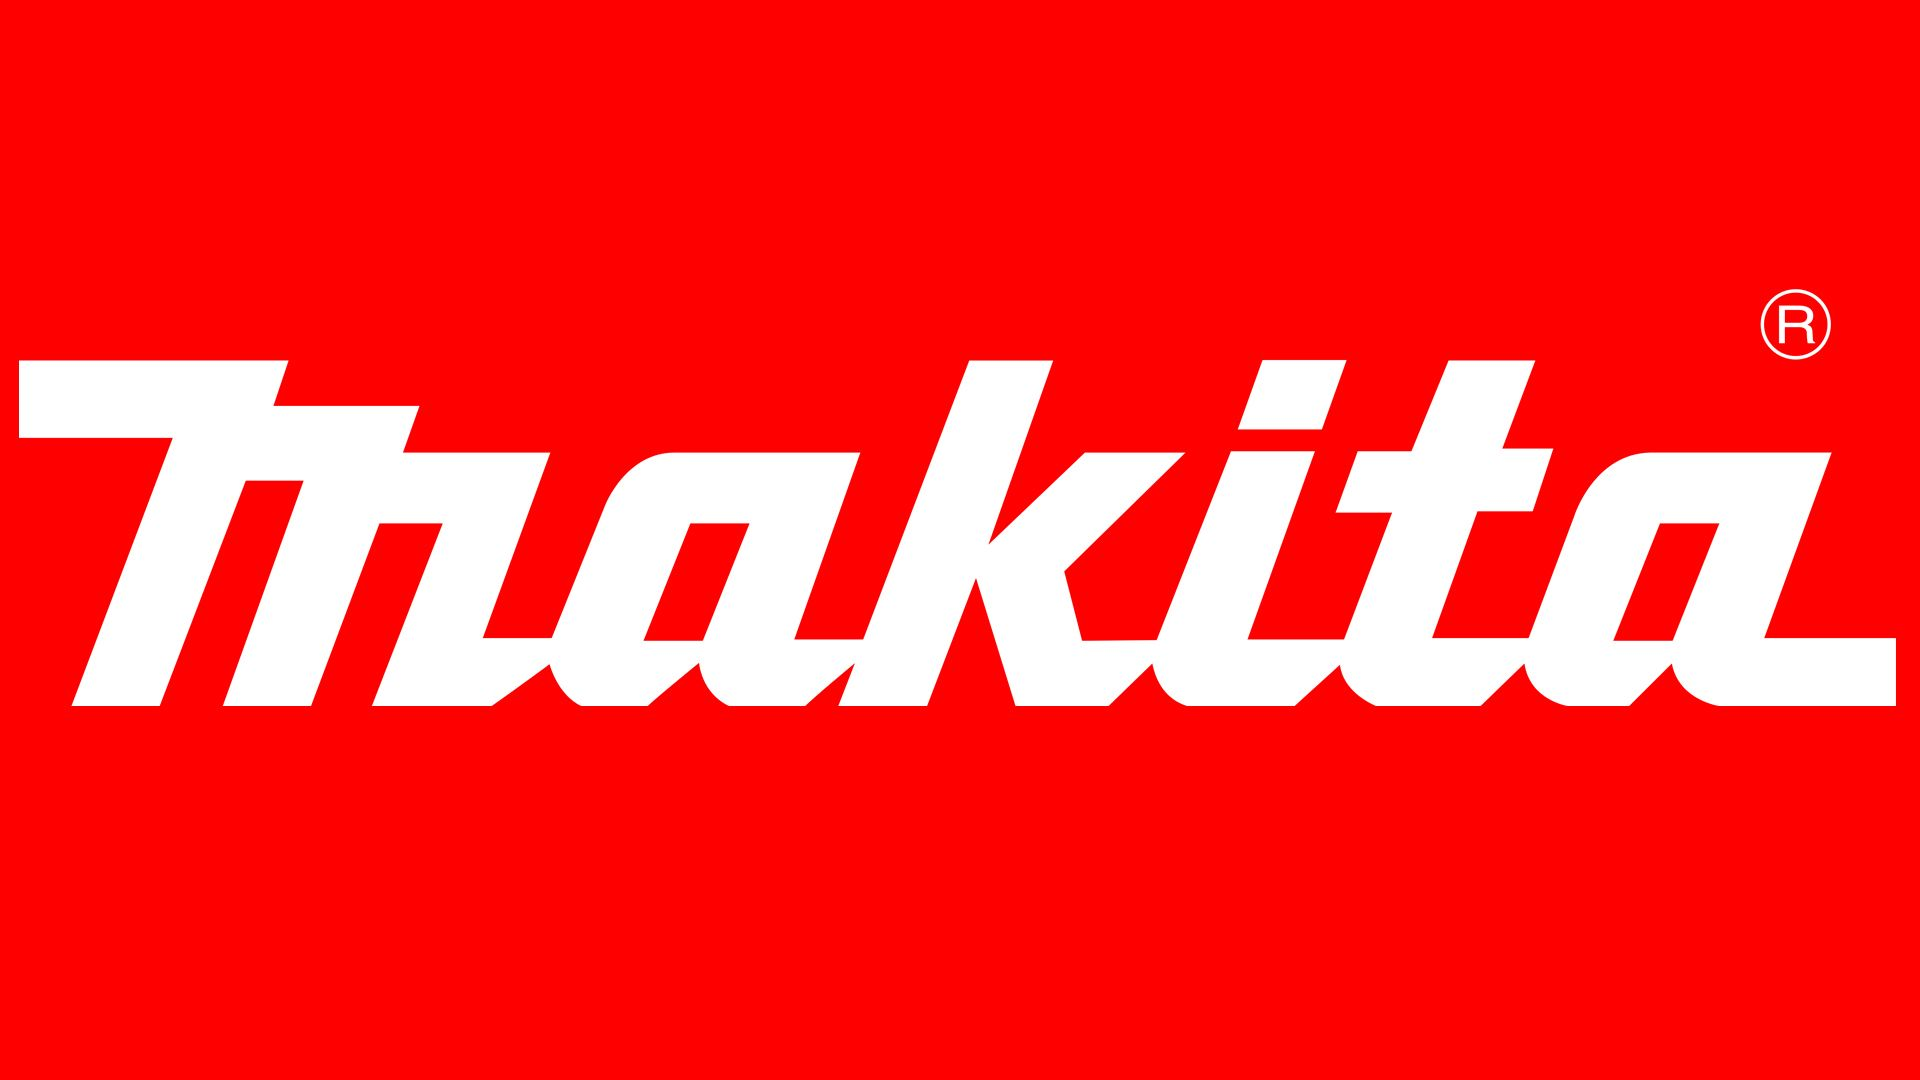 Логотип MAKITA